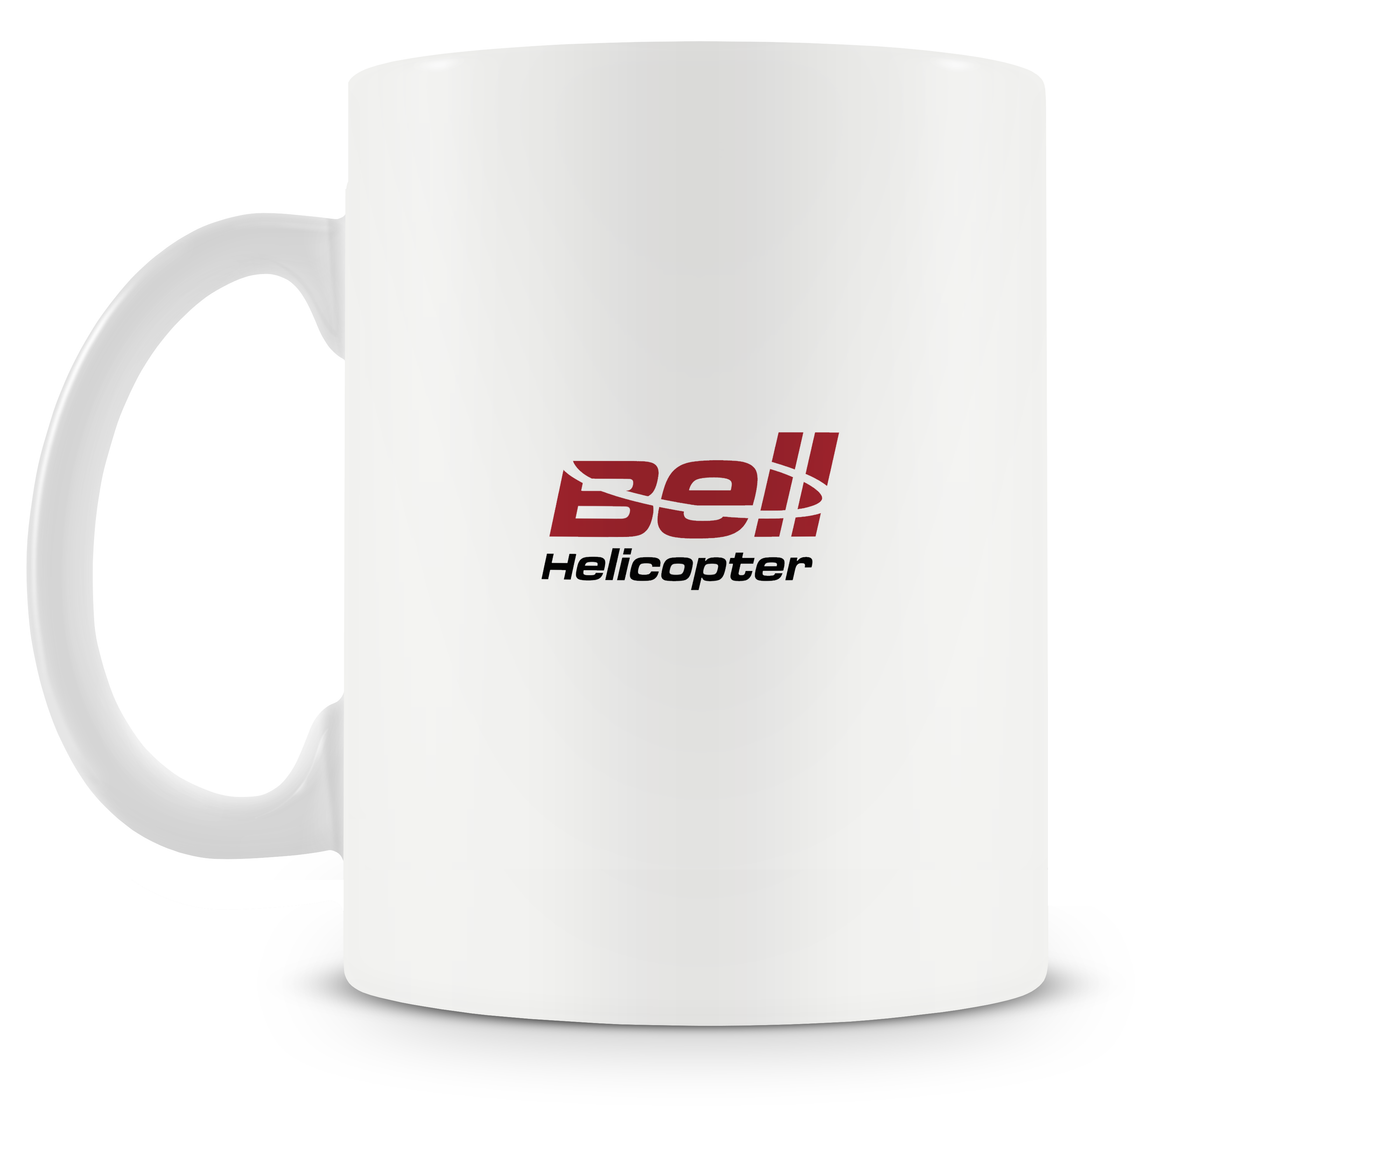 Bell 407 Mug - Aircraft Mugs